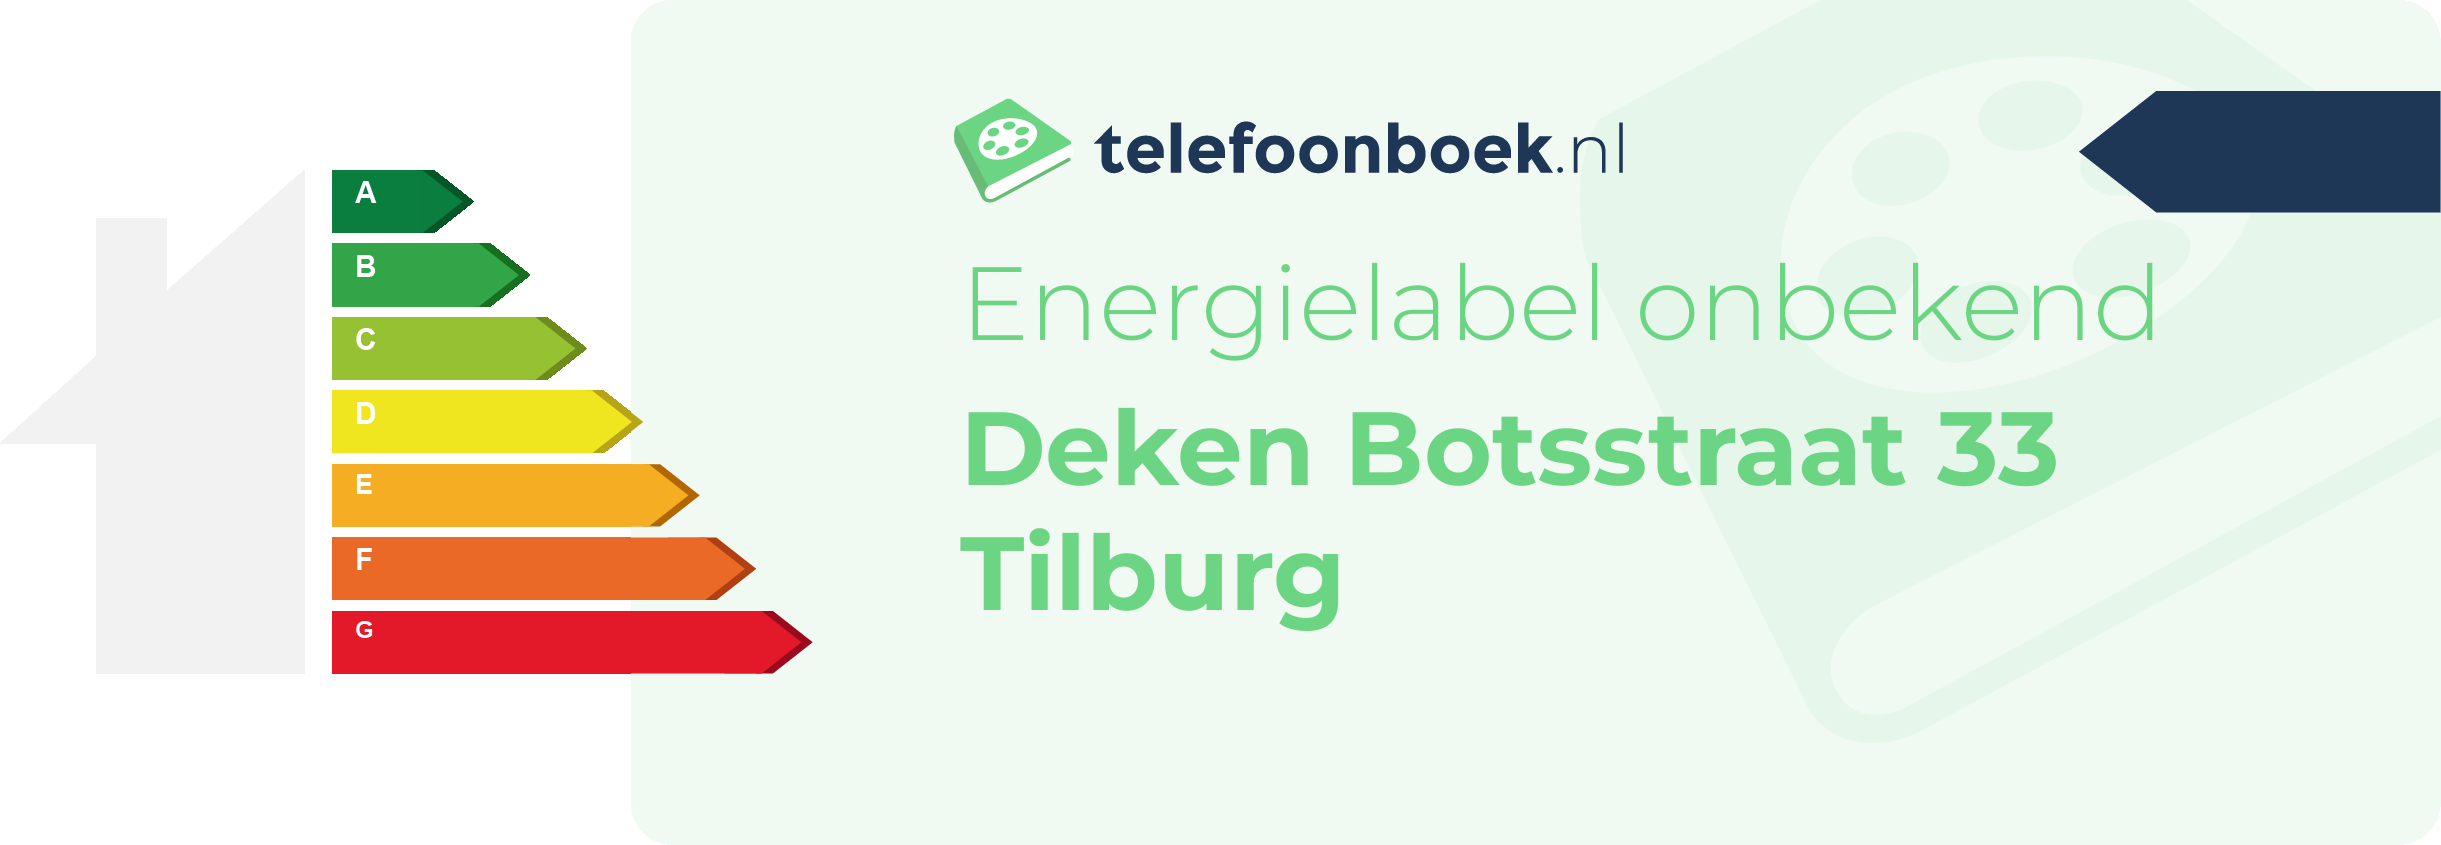 Energielabel Deken Botsstraat 33 Tilburg